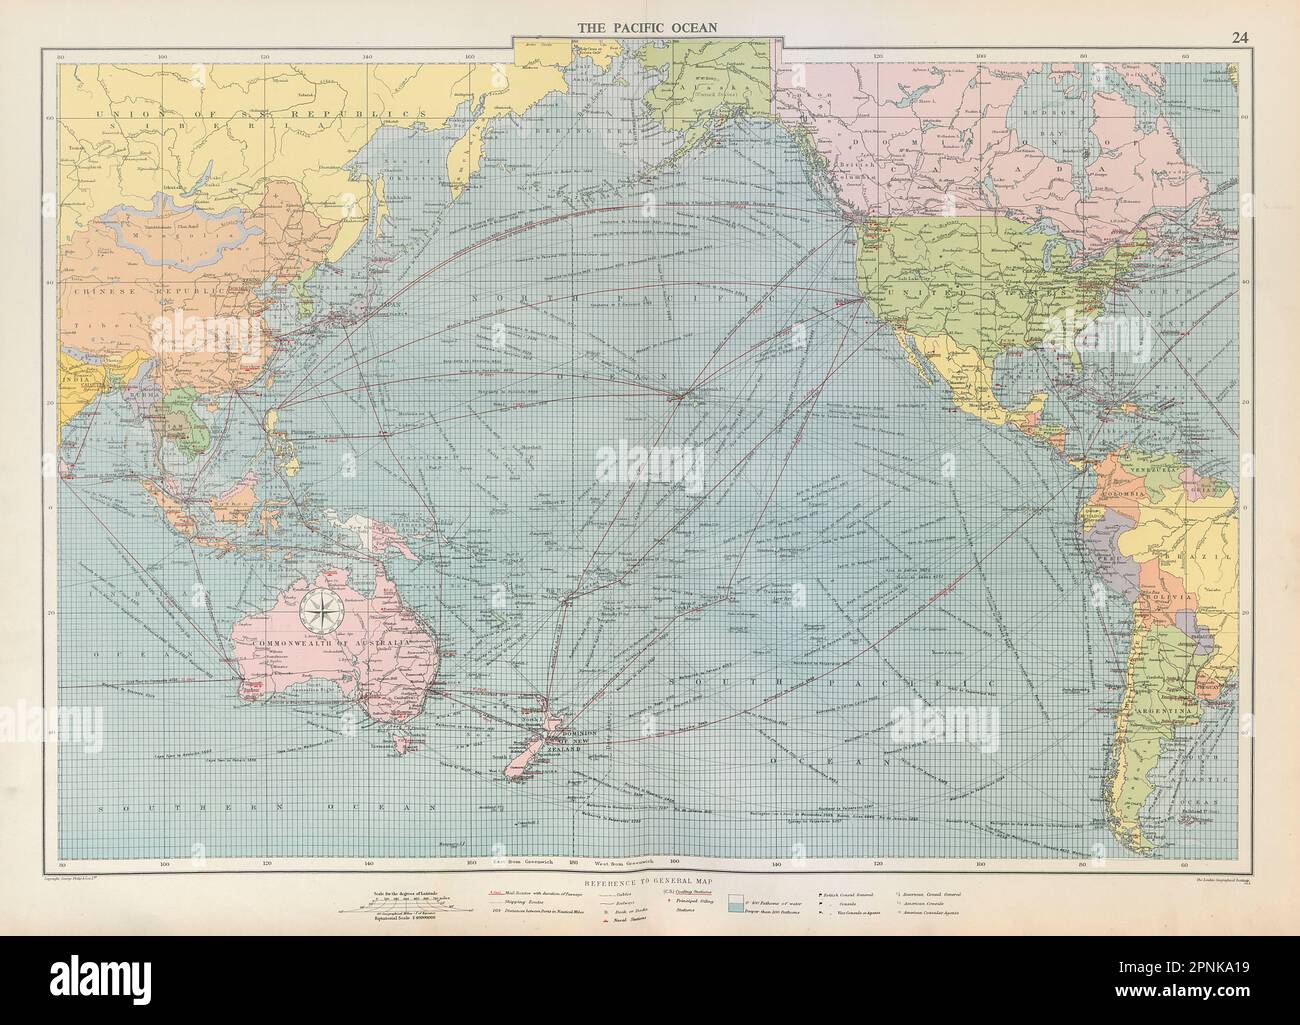 Seekarte des Pazifischen Ozeans. Häfen Leuchttürme Postrouten Werften GROSSE 1952-Karte Stockfoto